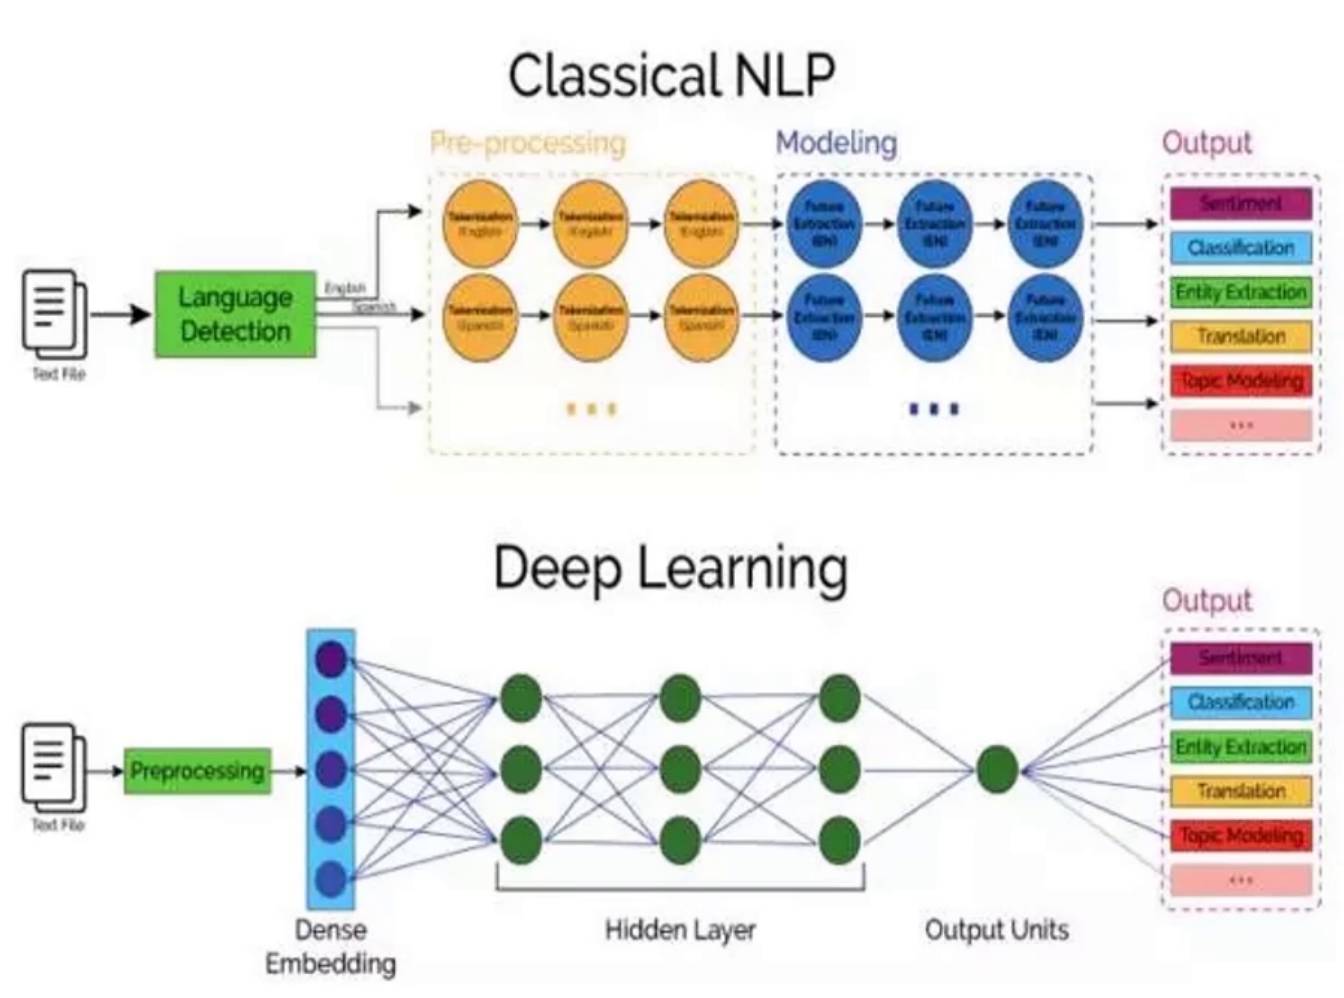 基于Pytorch热门深度学习框架 从零开发NLP聊天机器人